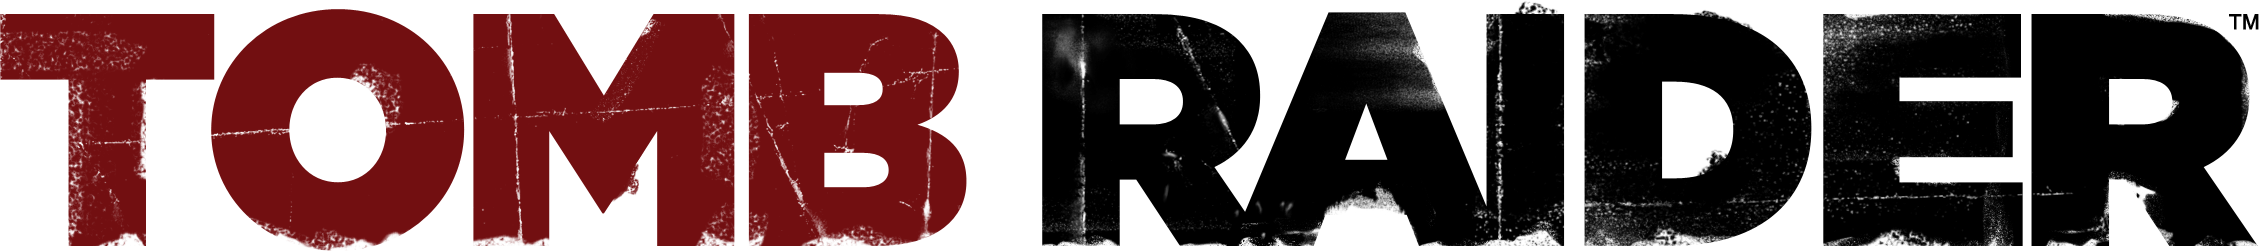 Логотип гробниц PNG вырез